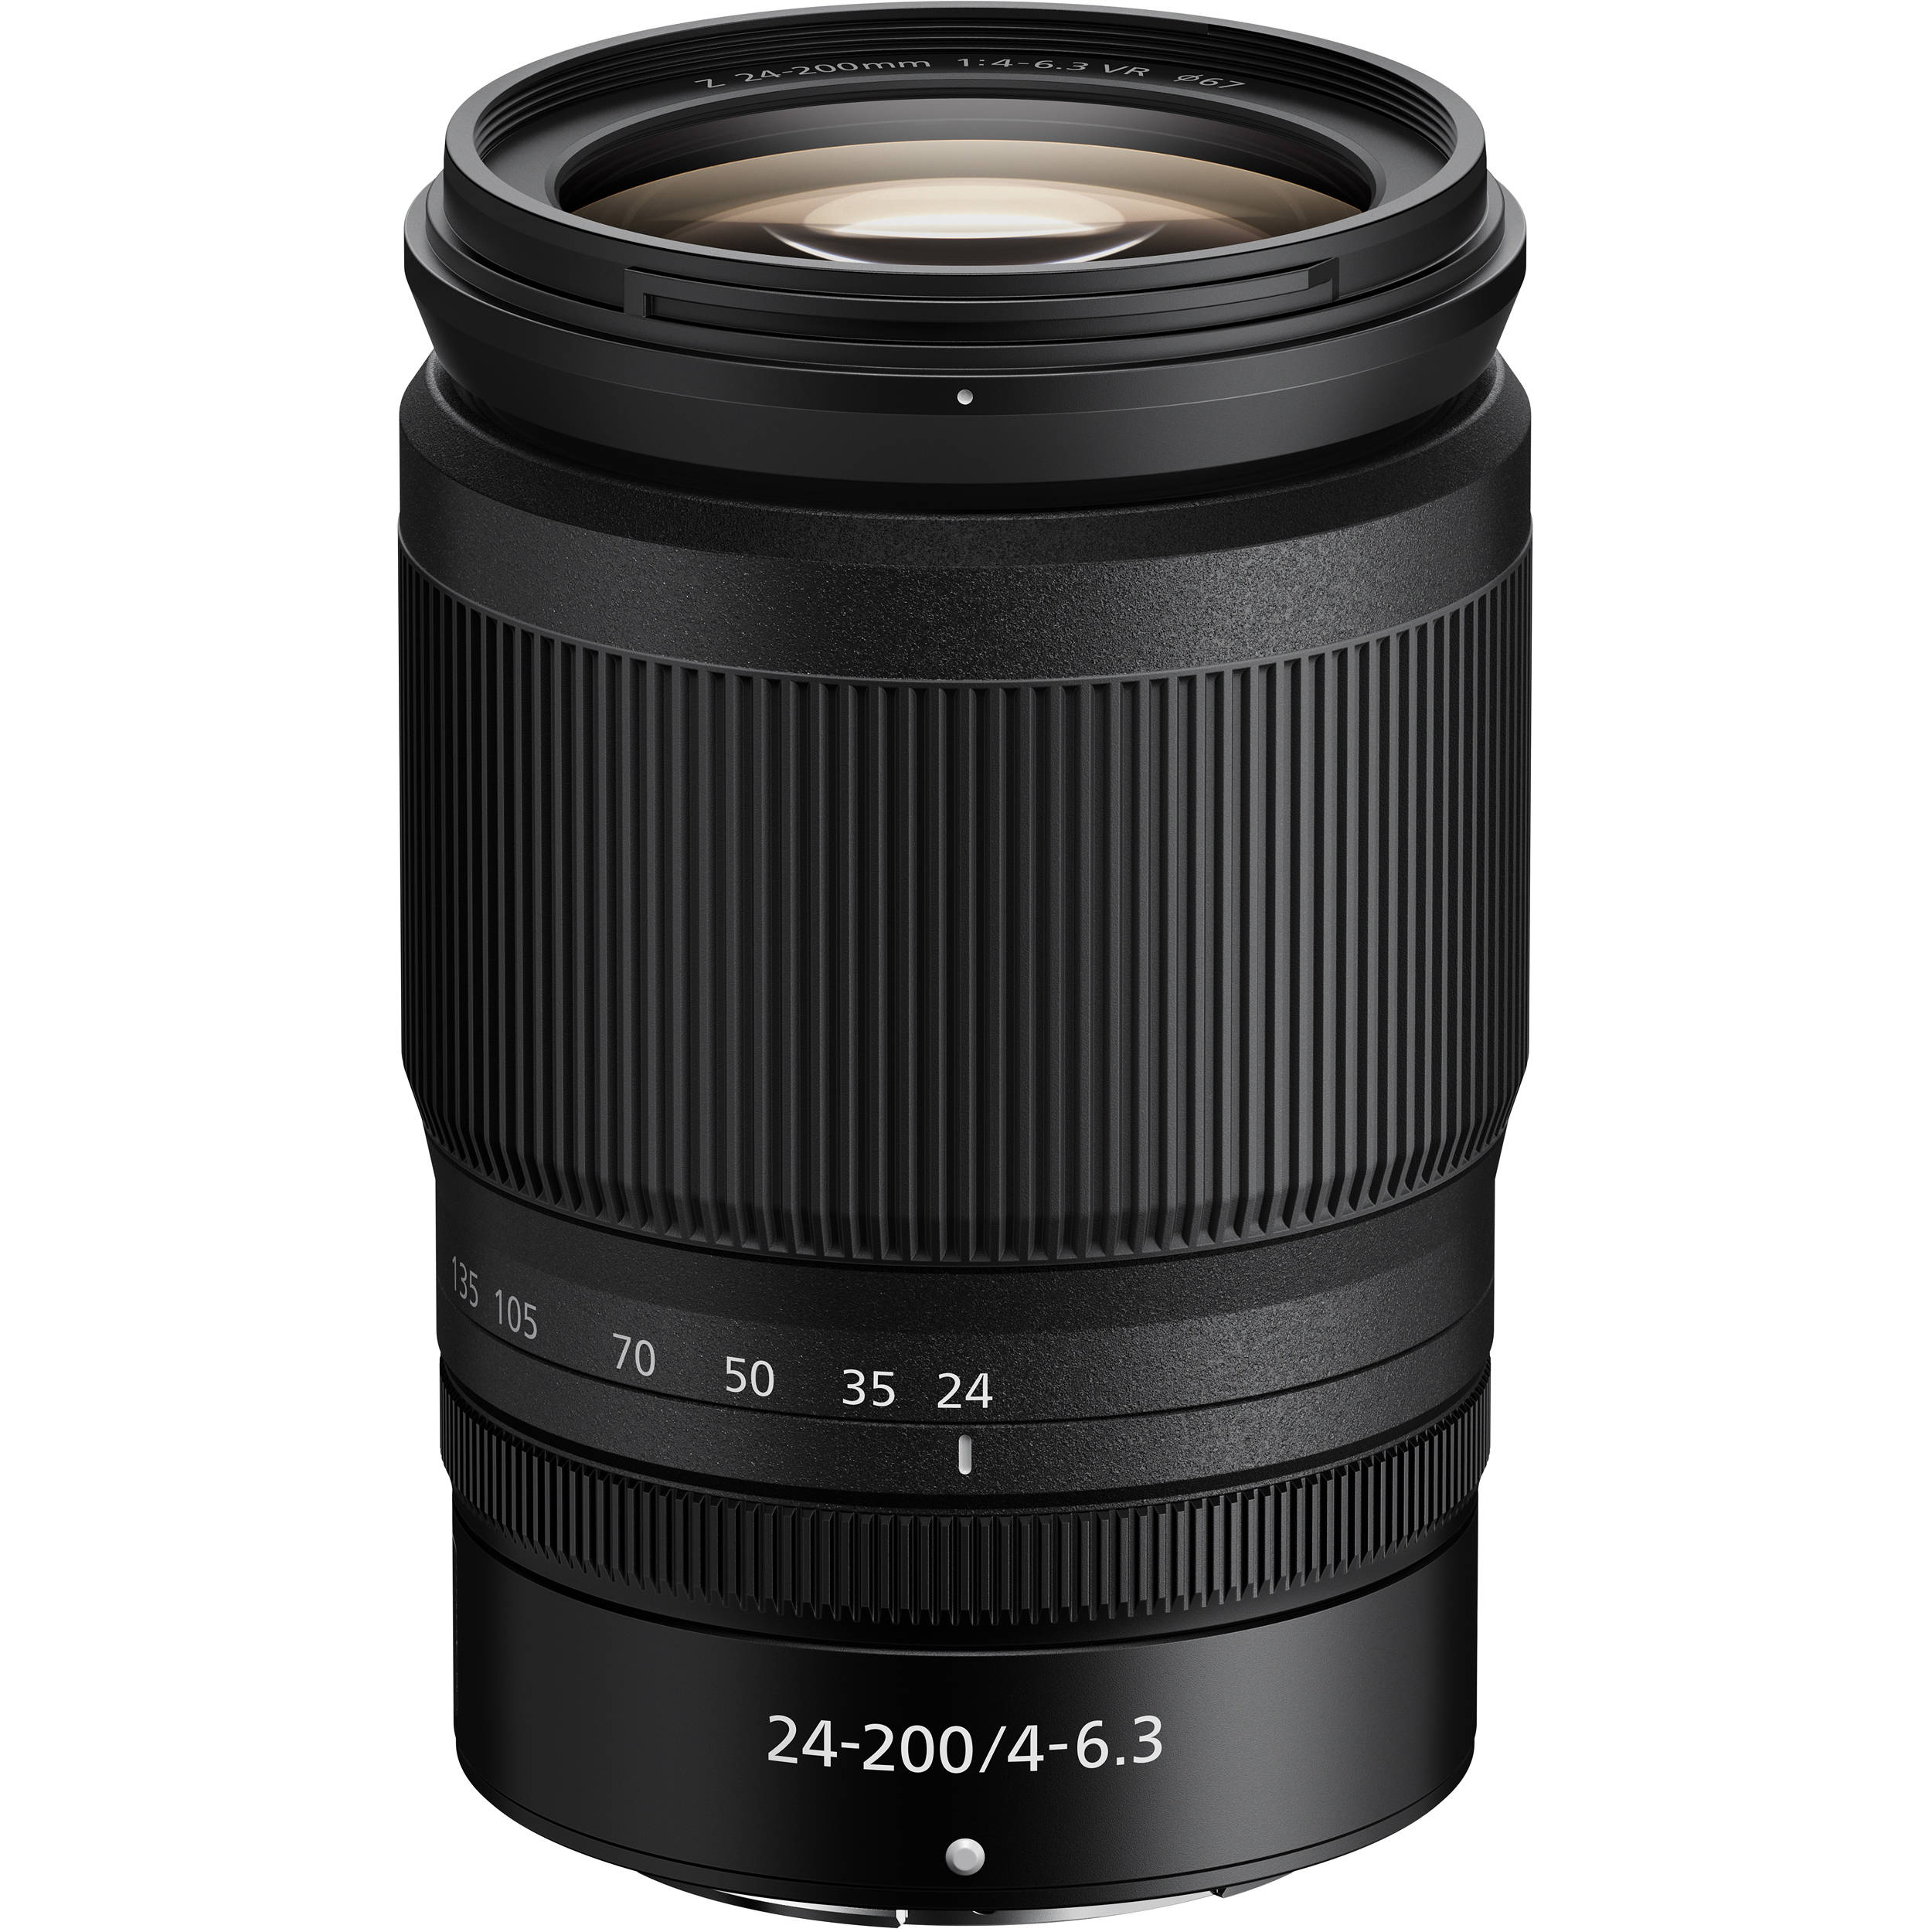 Nikon Z 24-200mm F4-6.3 VR (Mới 100%) Hàng VIC-VN Bảo hành chính hãng 02 năm toàn quốc